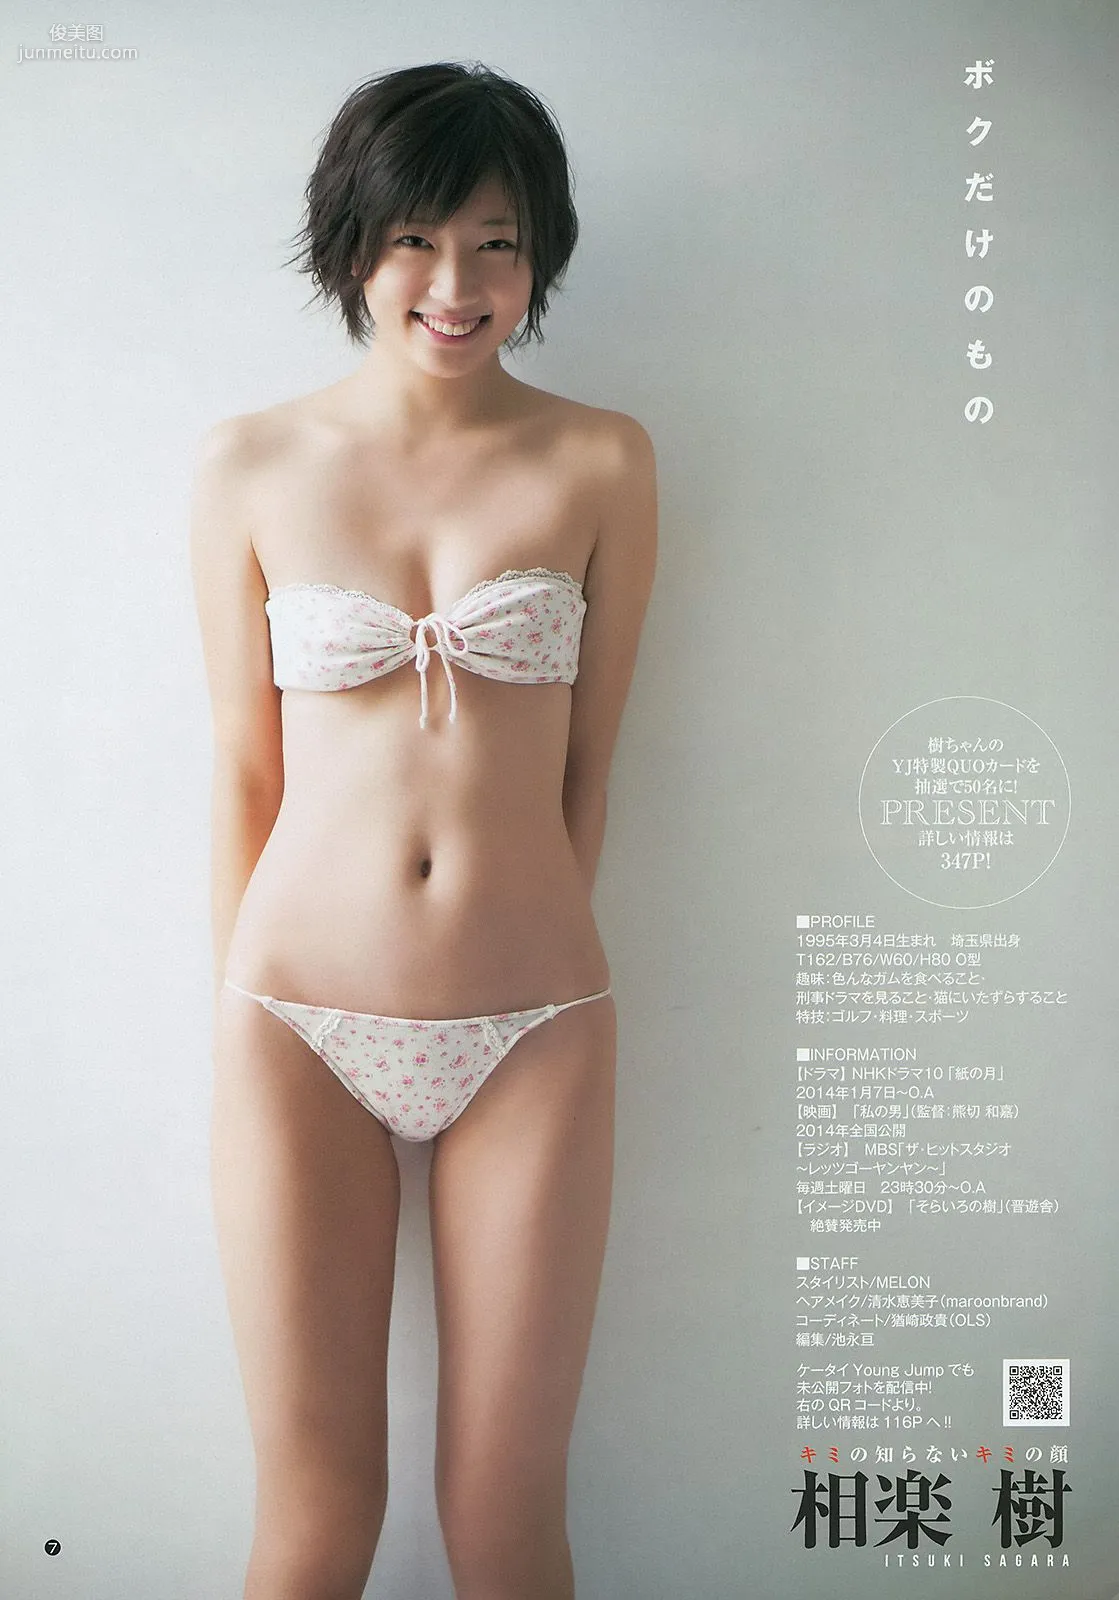 相楽樹 糸山千恵 優希美青 [Weekly Young Jump] 2013年No.50 写真杂志8